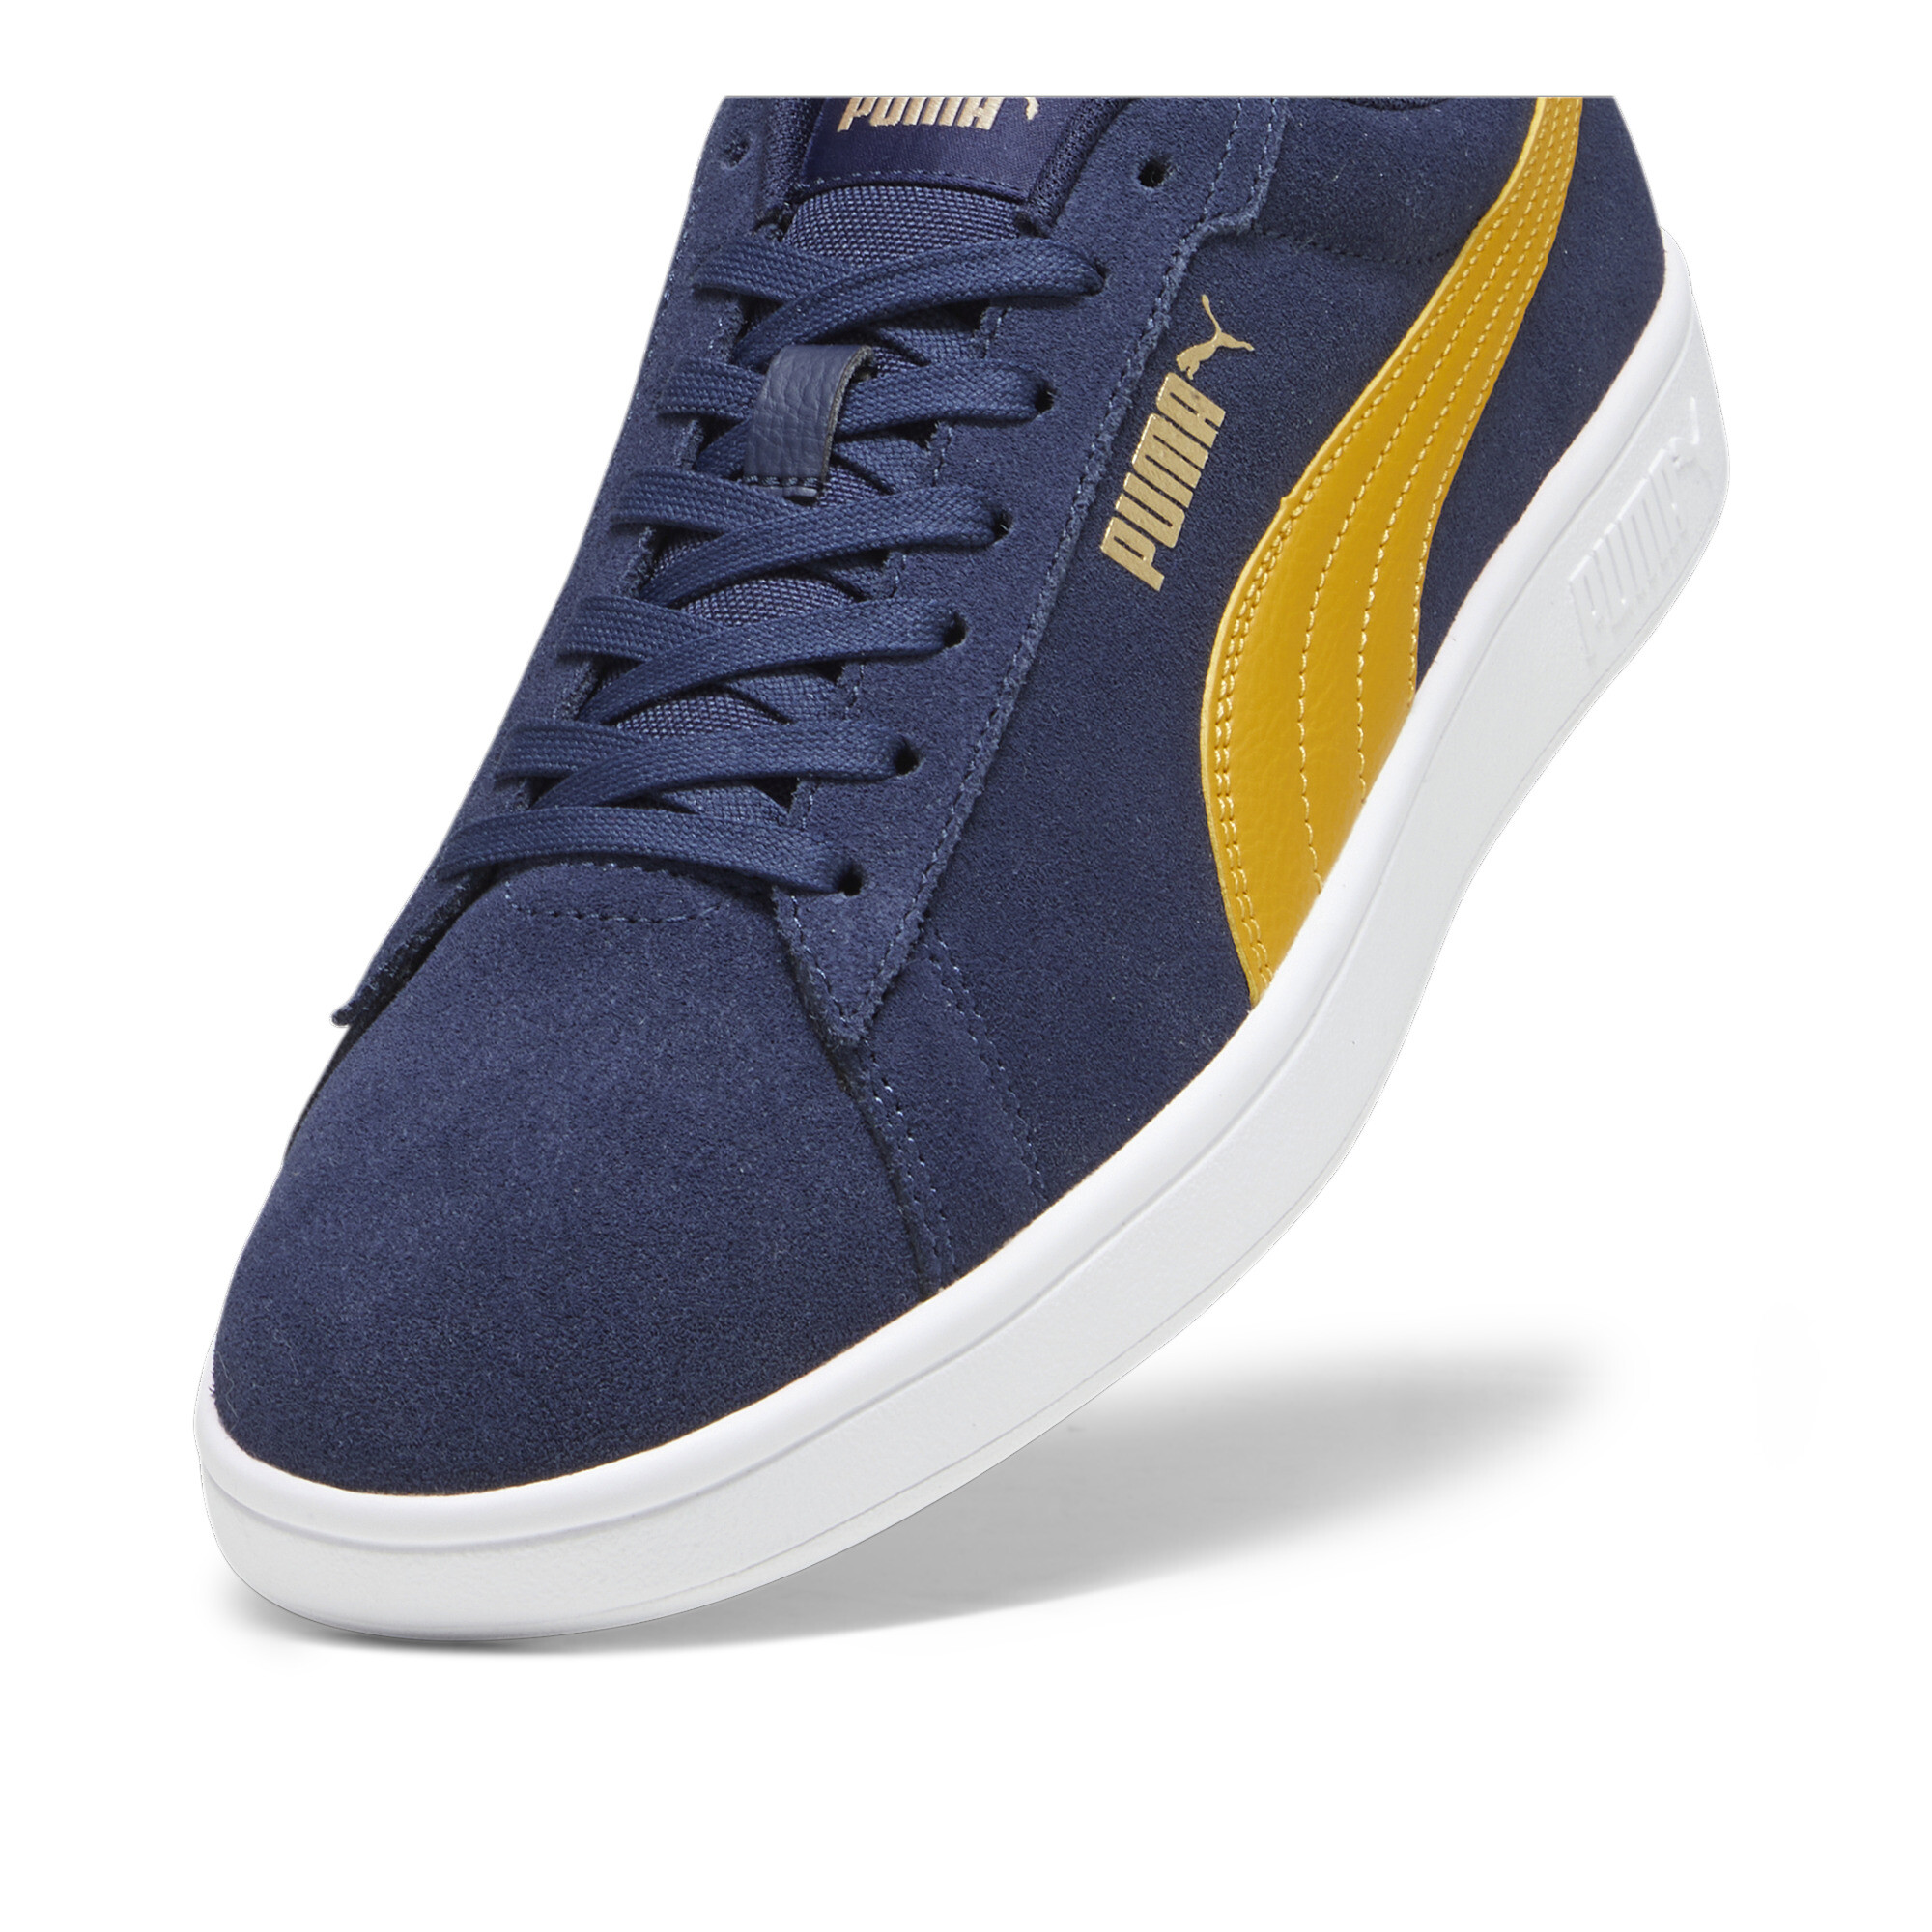 Puma Smash 3.0 Sneakers, Blue, Size 38, Shoes